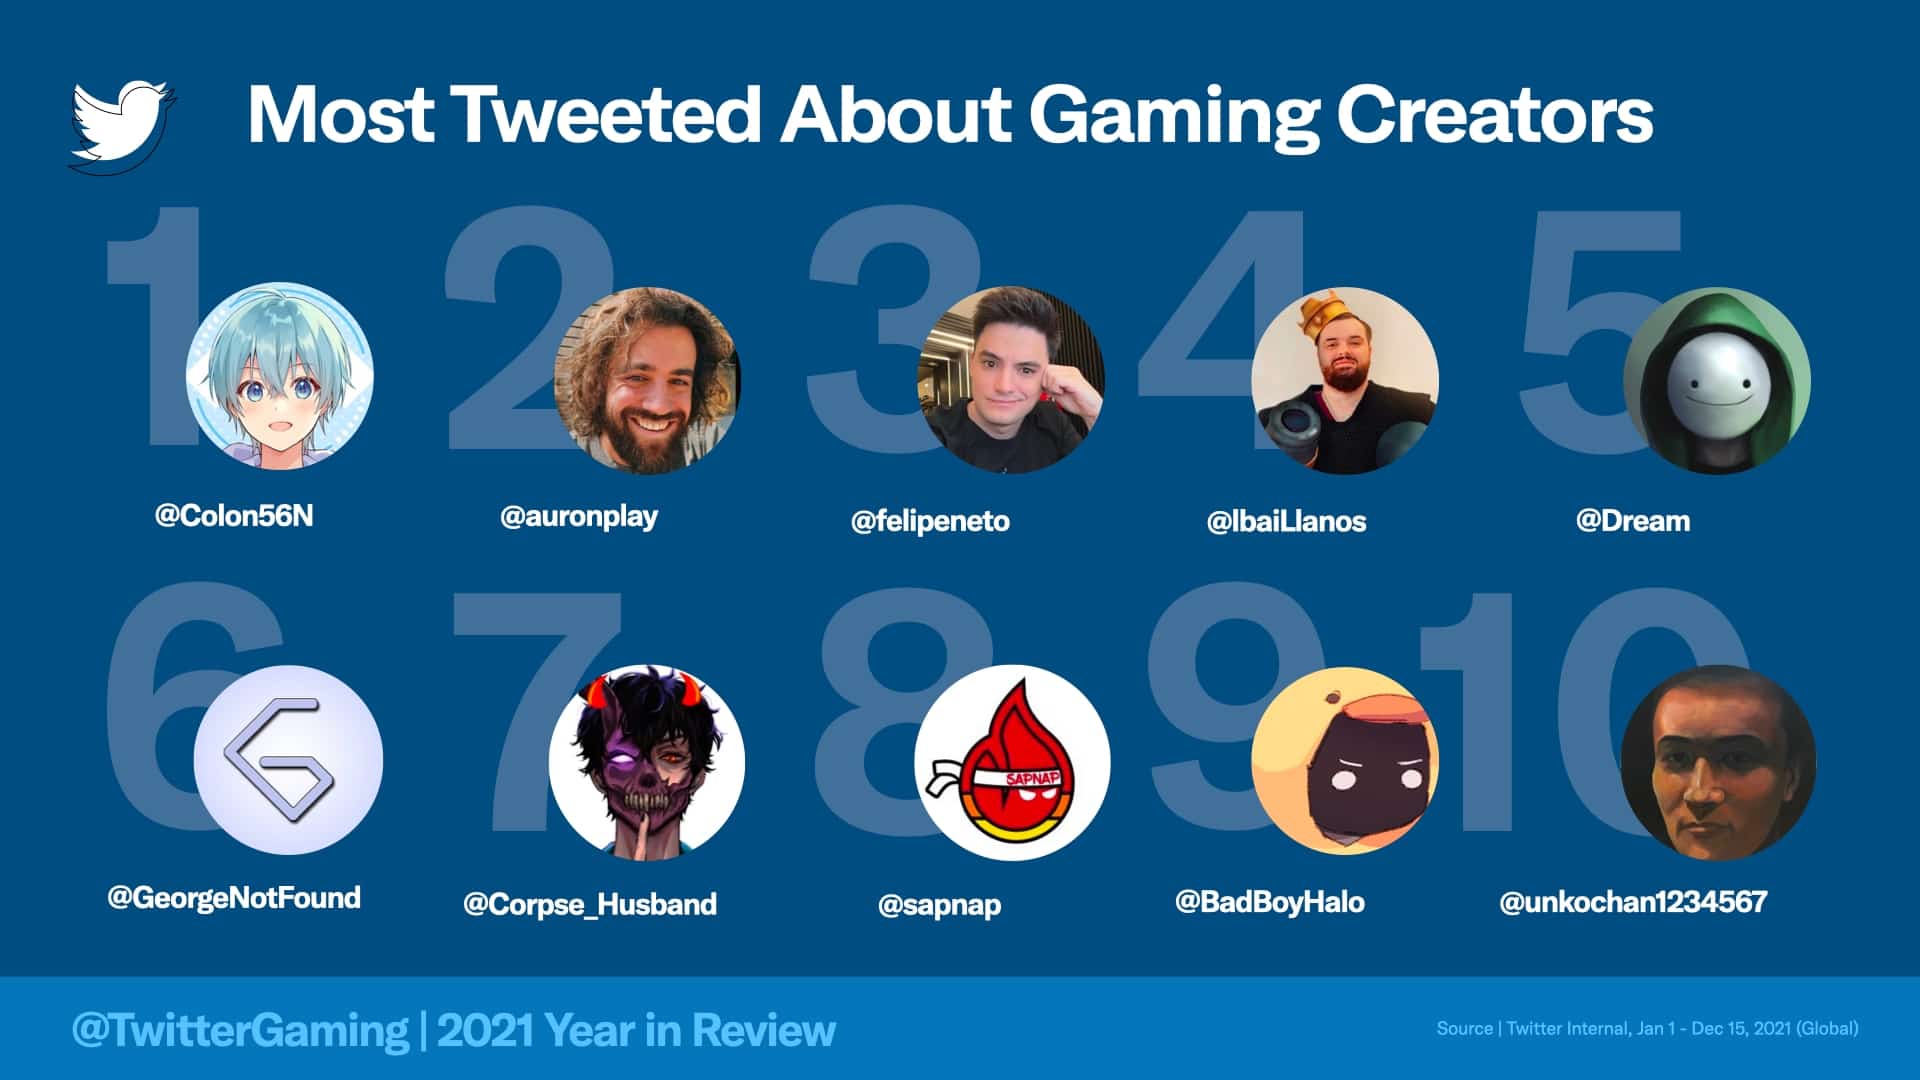 Twitter stats reveal how huge DreamSMP fandom is on social media